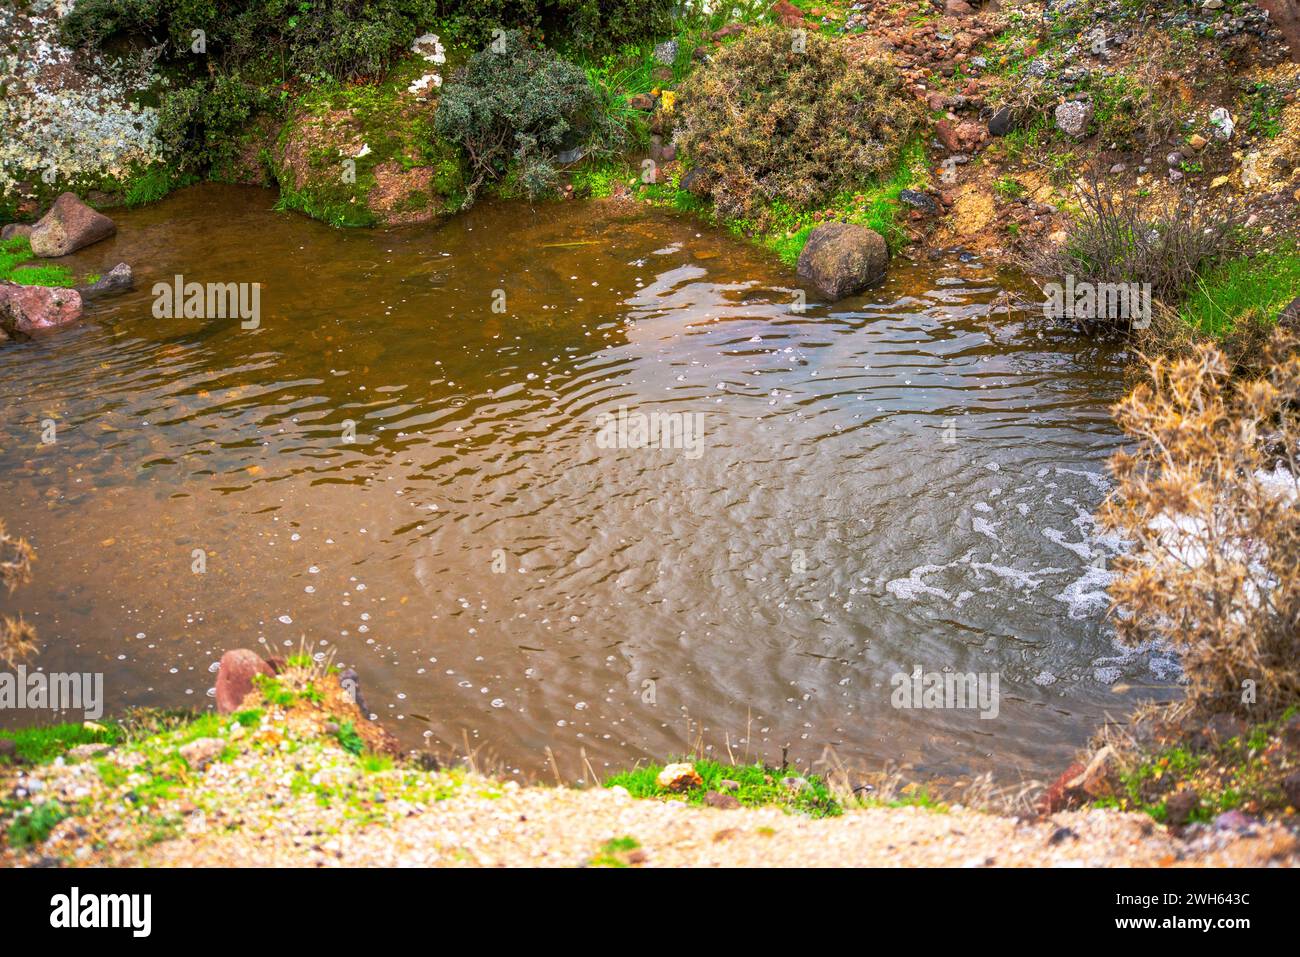 Una escena tranquila con un pequeño estanque con una suave cascada, creando un paisaje sereno y tranquilo rodeado de rocas y naturaleza Foto de stock